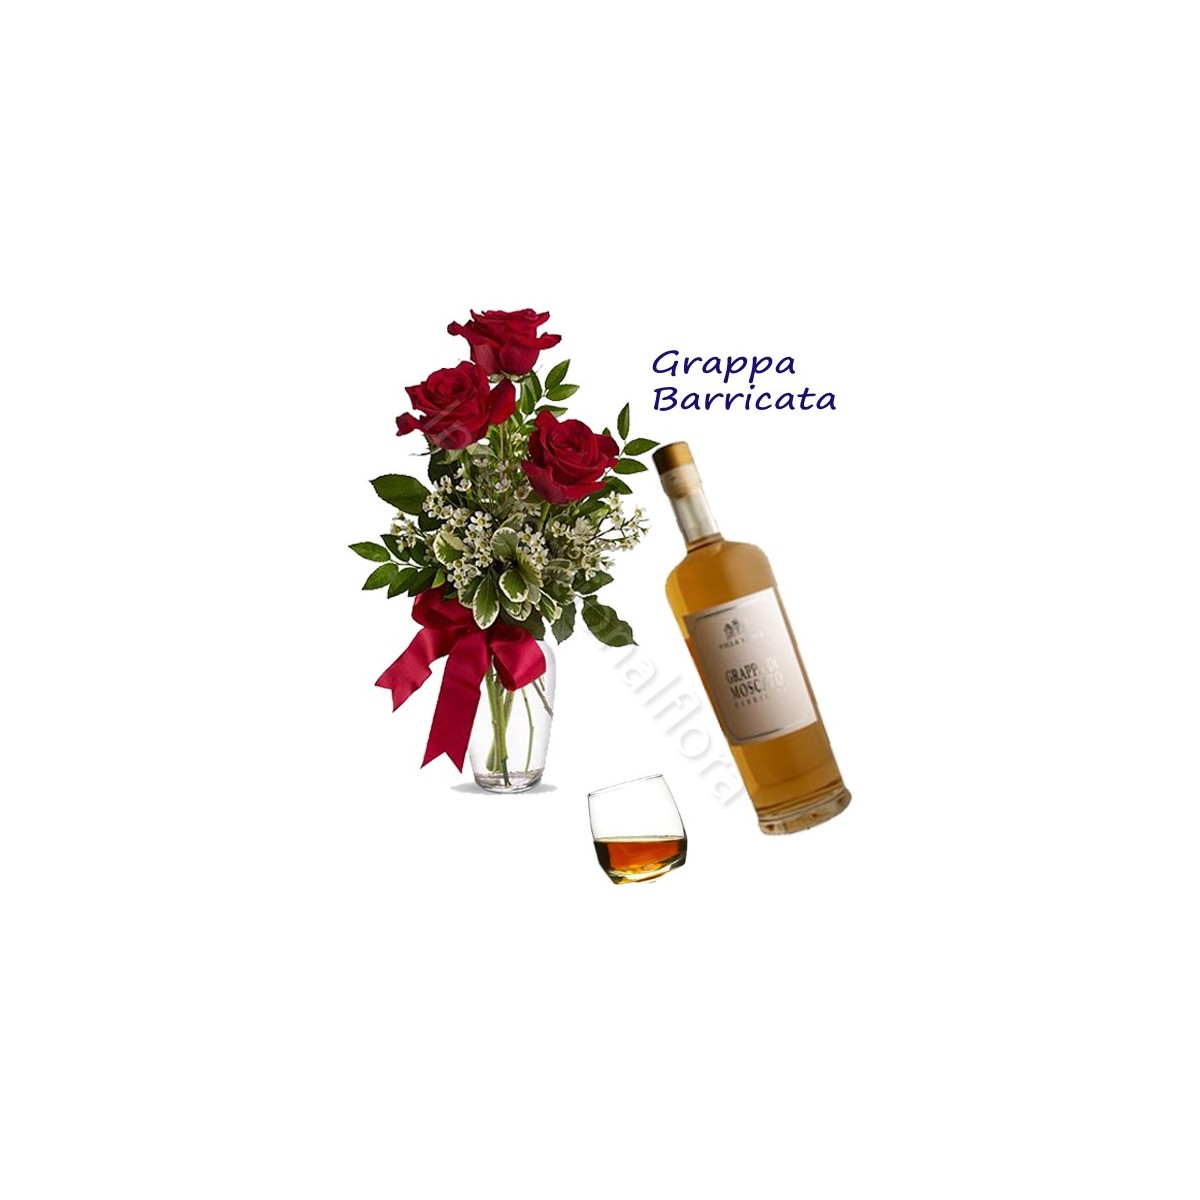 Bottiglia di Grappa Barricata con Bouquet di 3 Rose rosse